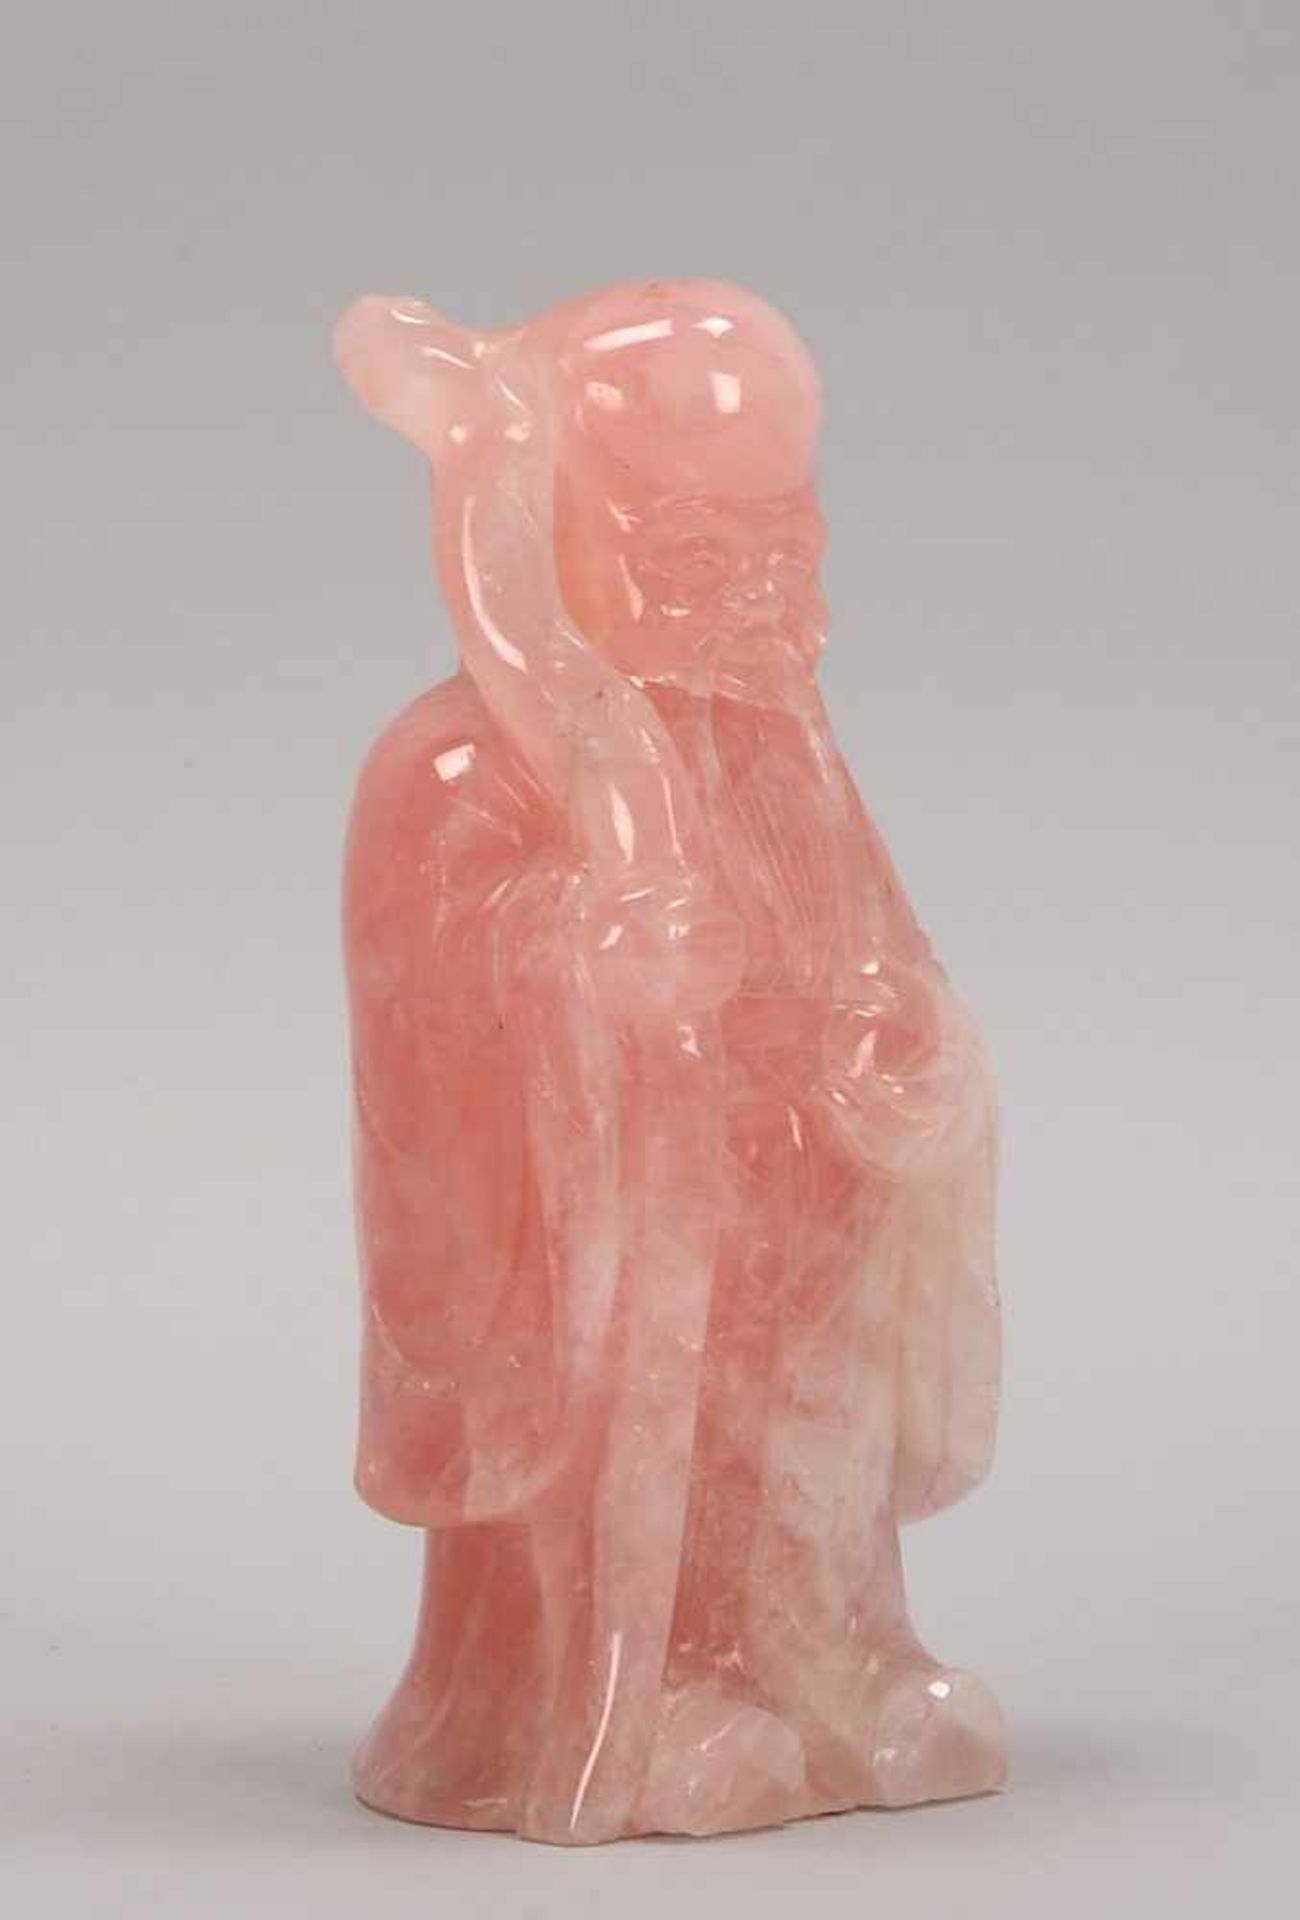 Rosenquarz-Figur (steht nach chinesischer Steinkunde für Gesundheit), China, 'Weiser mit Wanderstab' - Bild 2 aus 2